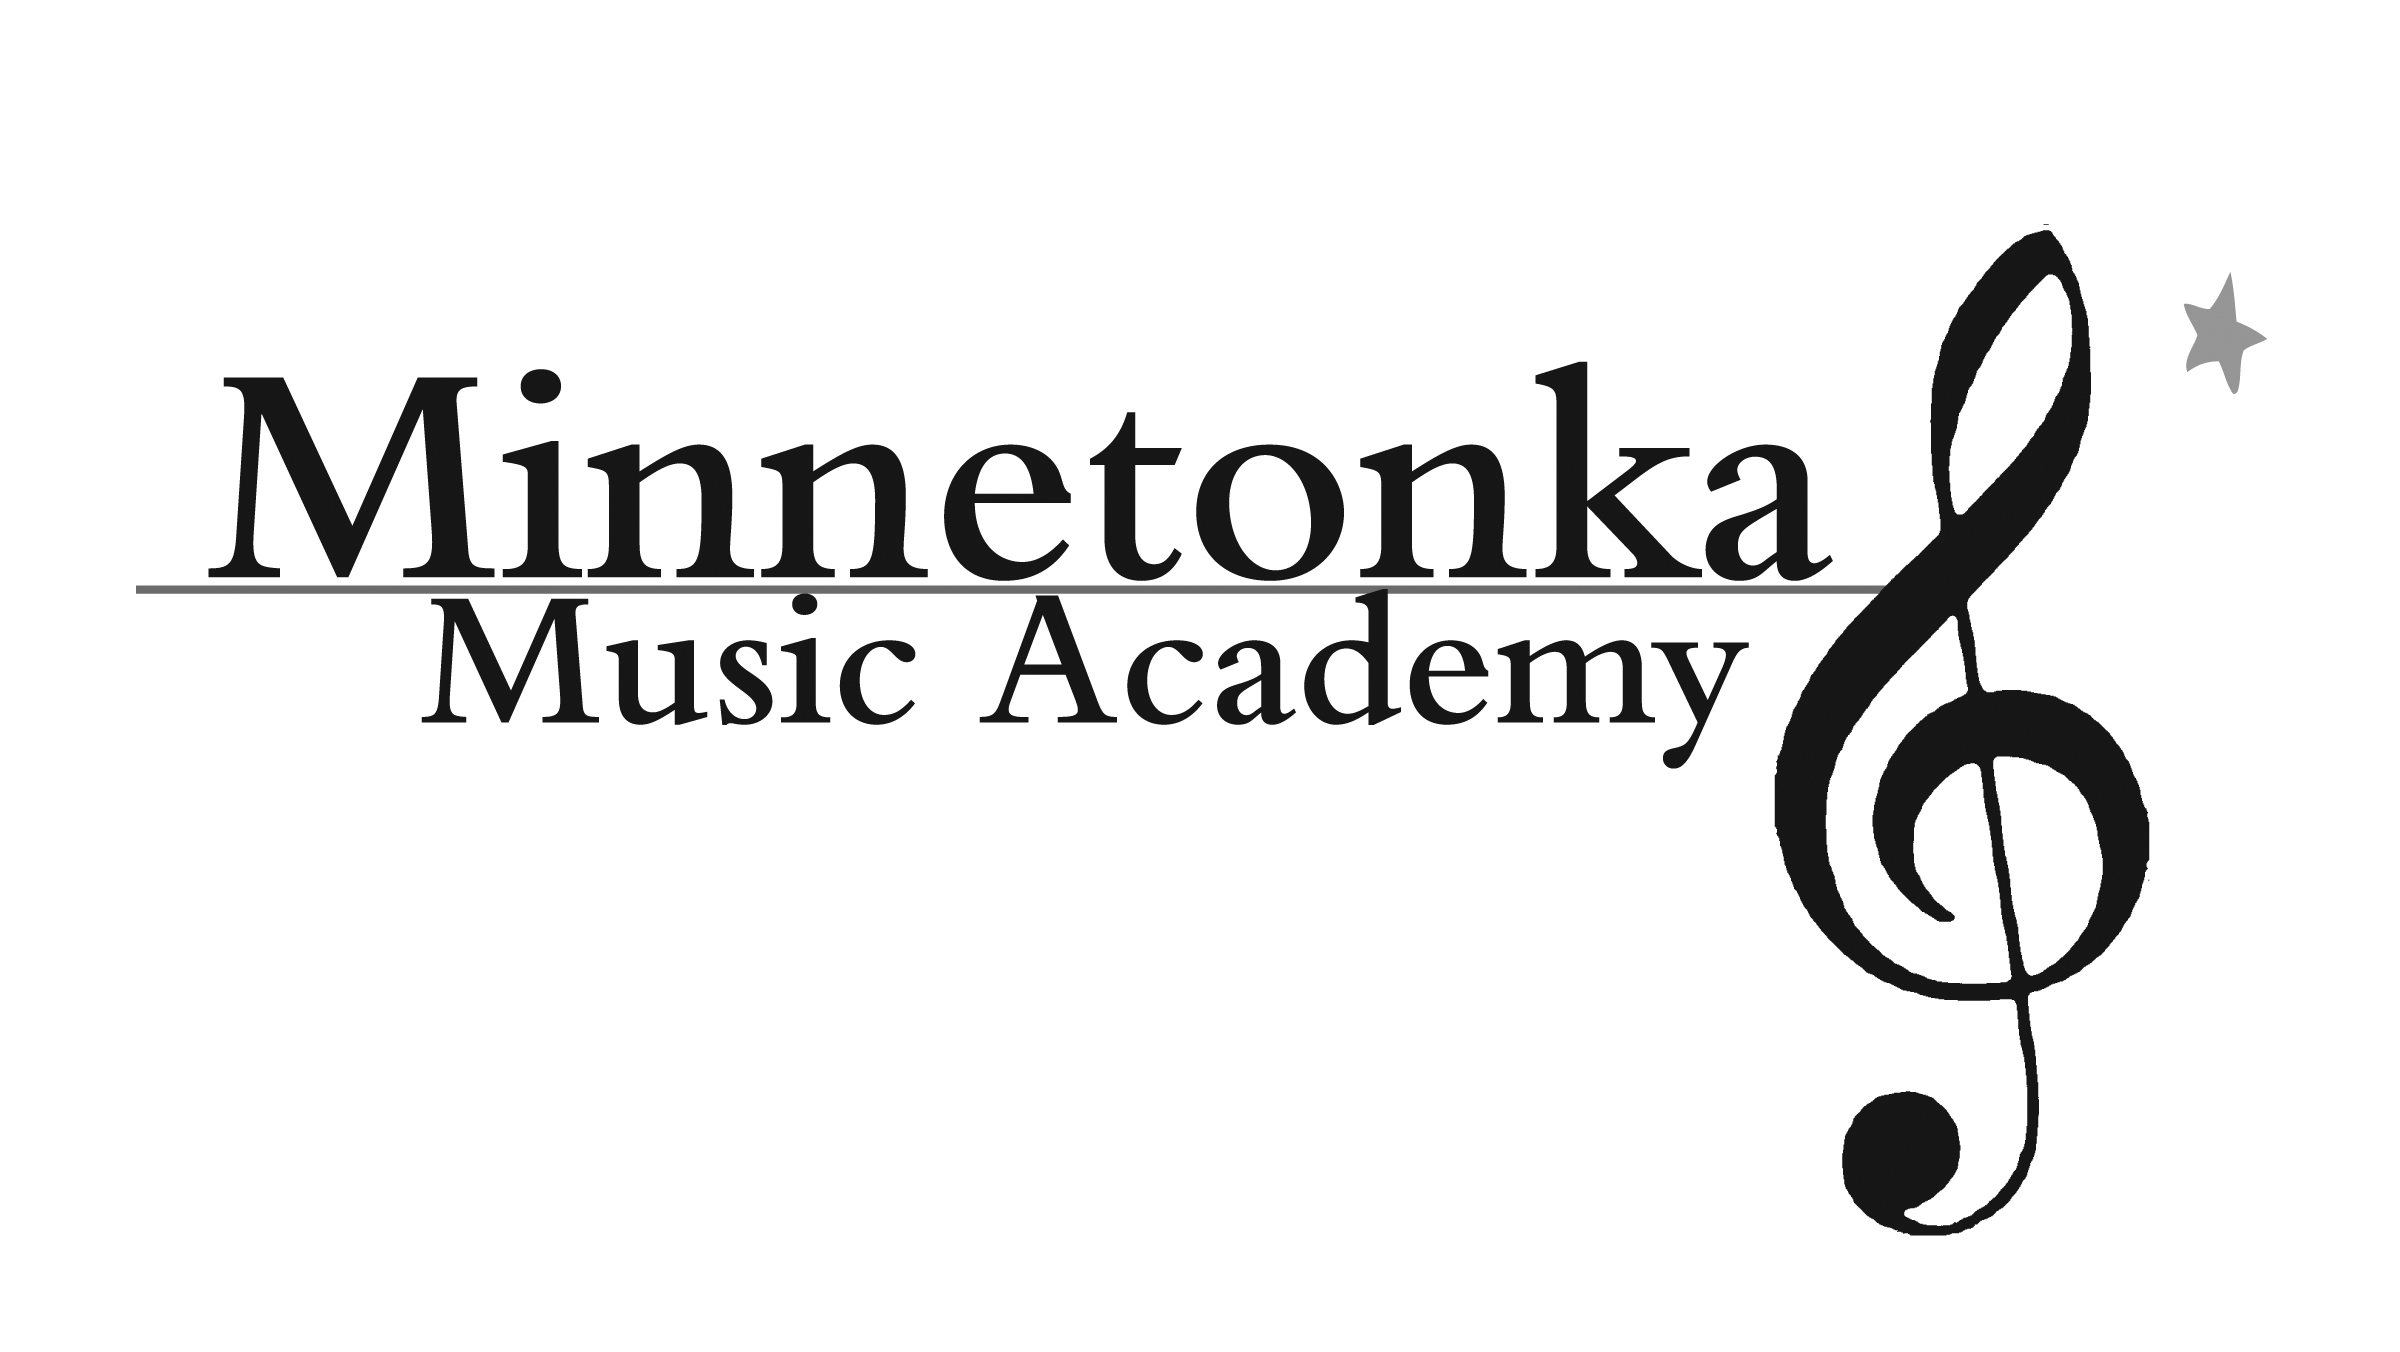 Academy តន្ត្រី Minnetonka